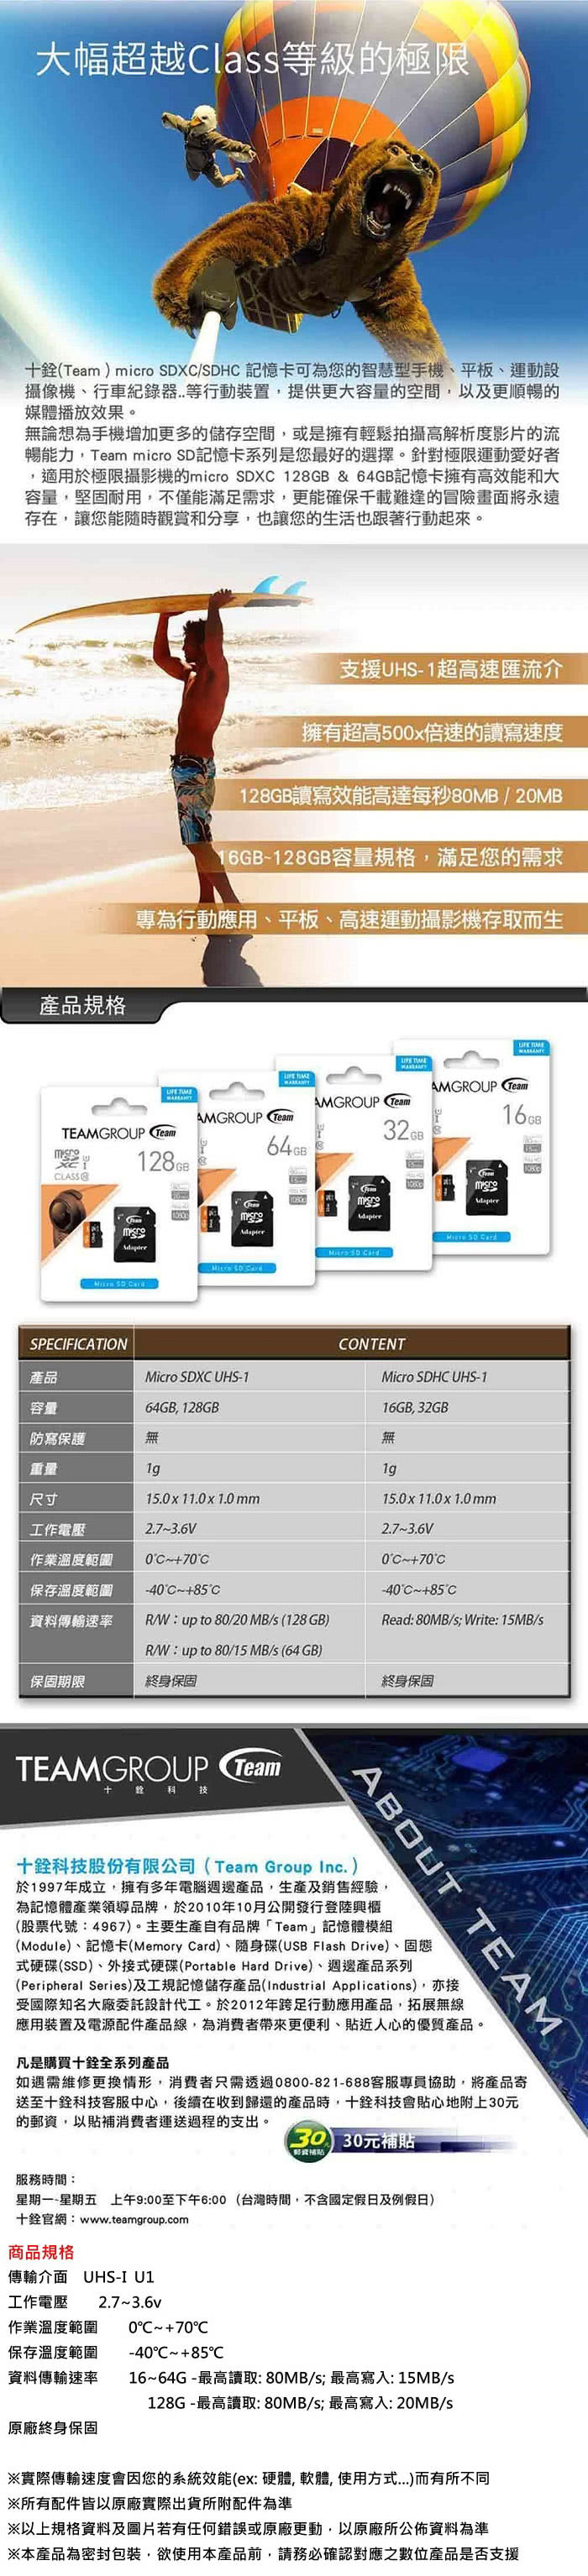 【Team 十銓】16GB 80MB/s microSDHC TF UHS-I U1 C10(記憶卡)